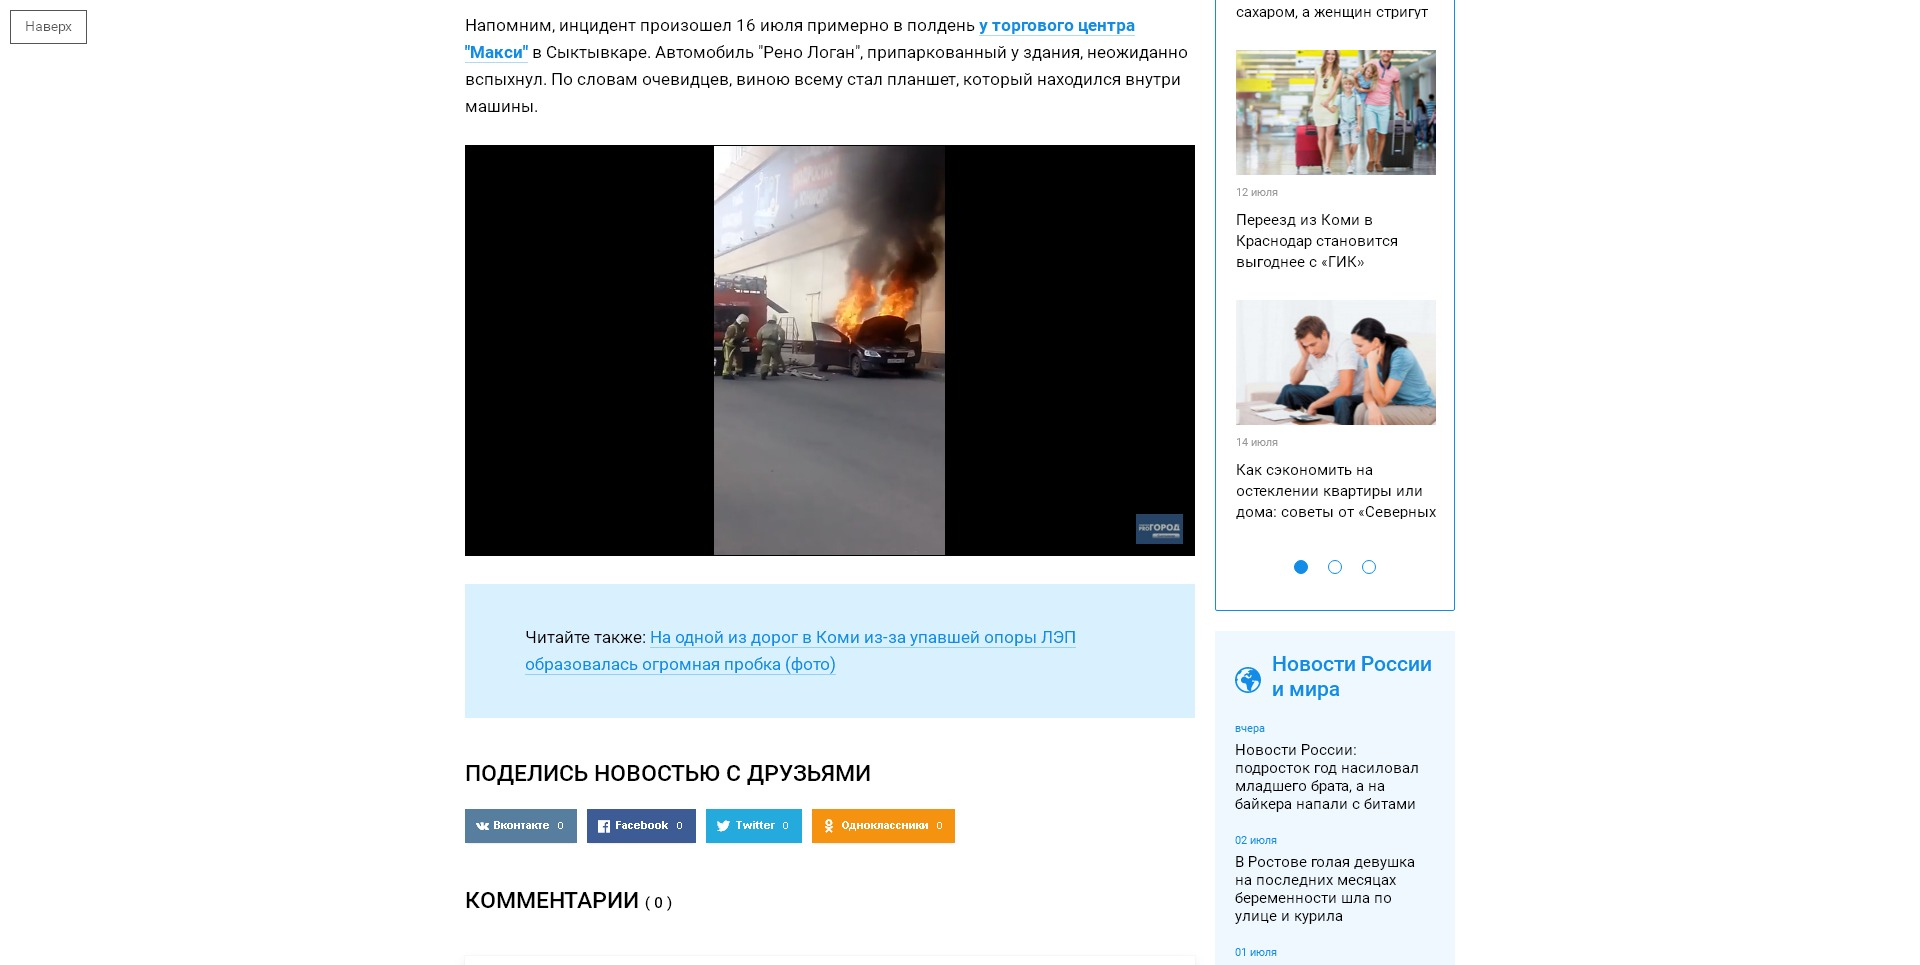 Появилось видео, как возле крупного ТЦ в Сыктывкаре полыхает автомобиль